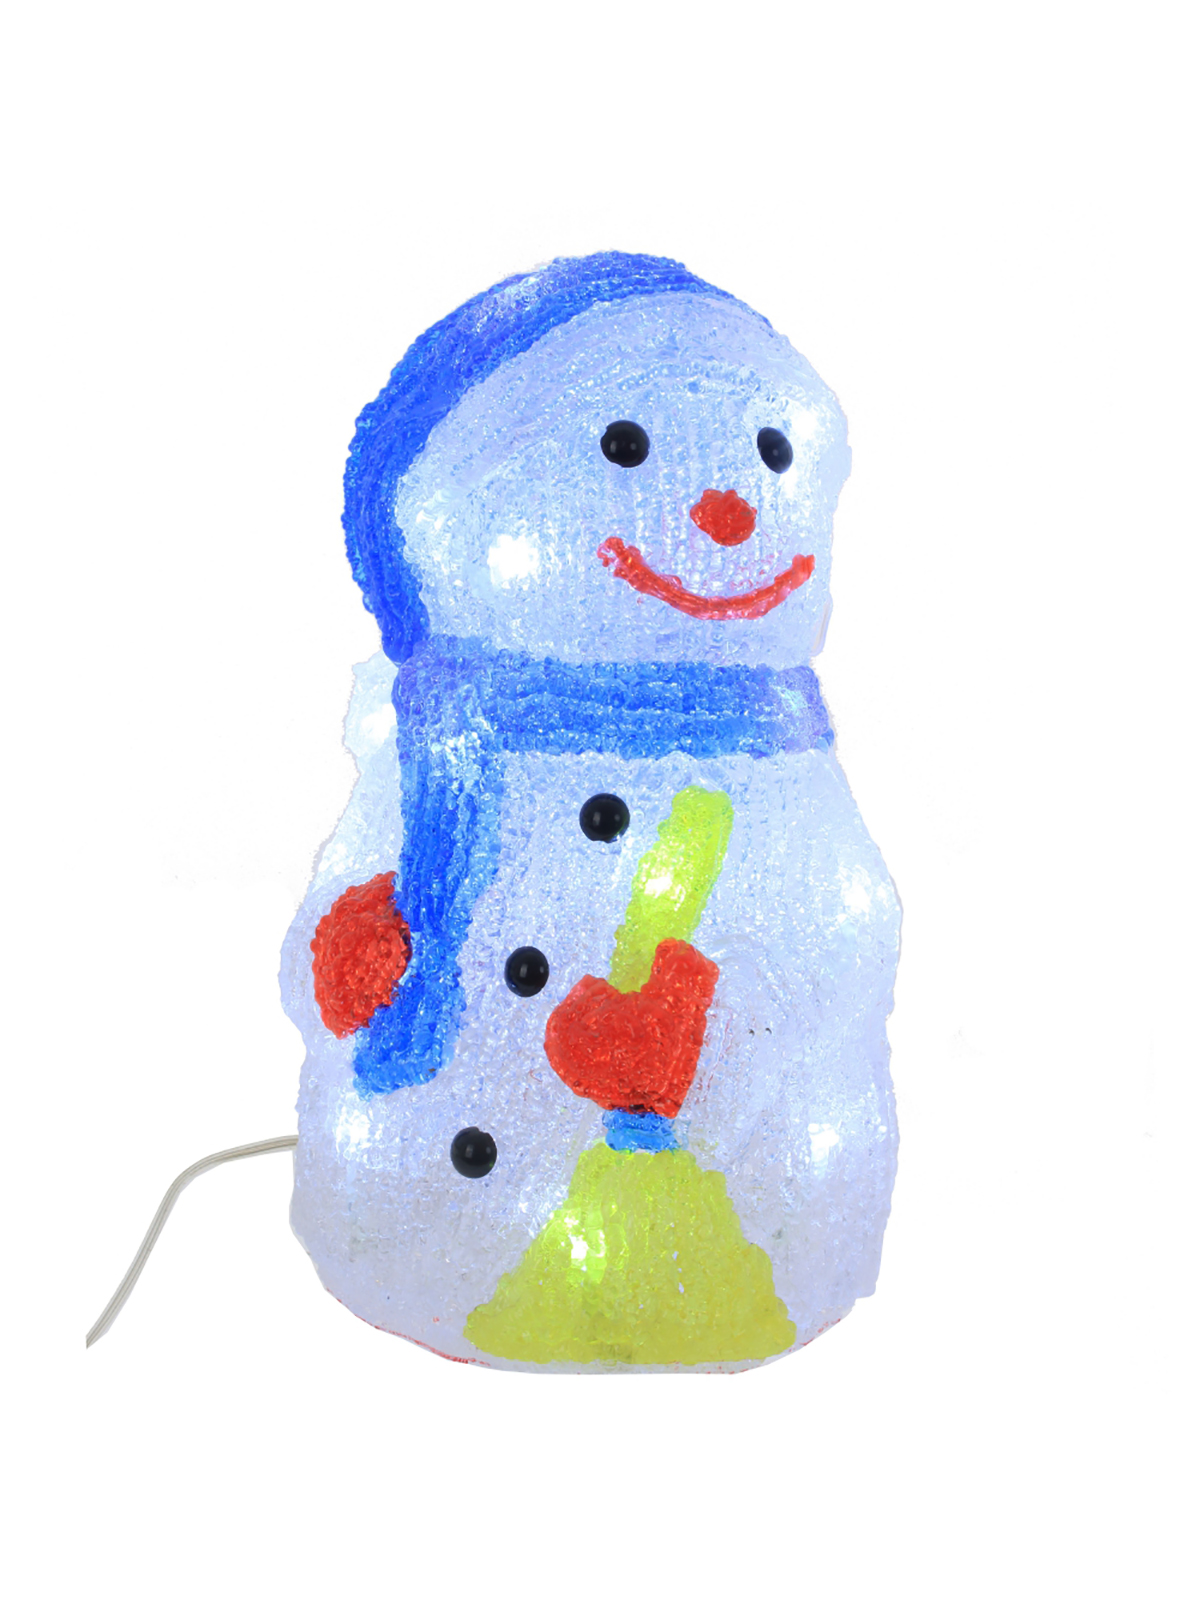 Новогодняя фигурка Remecoclub Снеговик с подсветкой 701801]REM_hh1 14x14x25 см